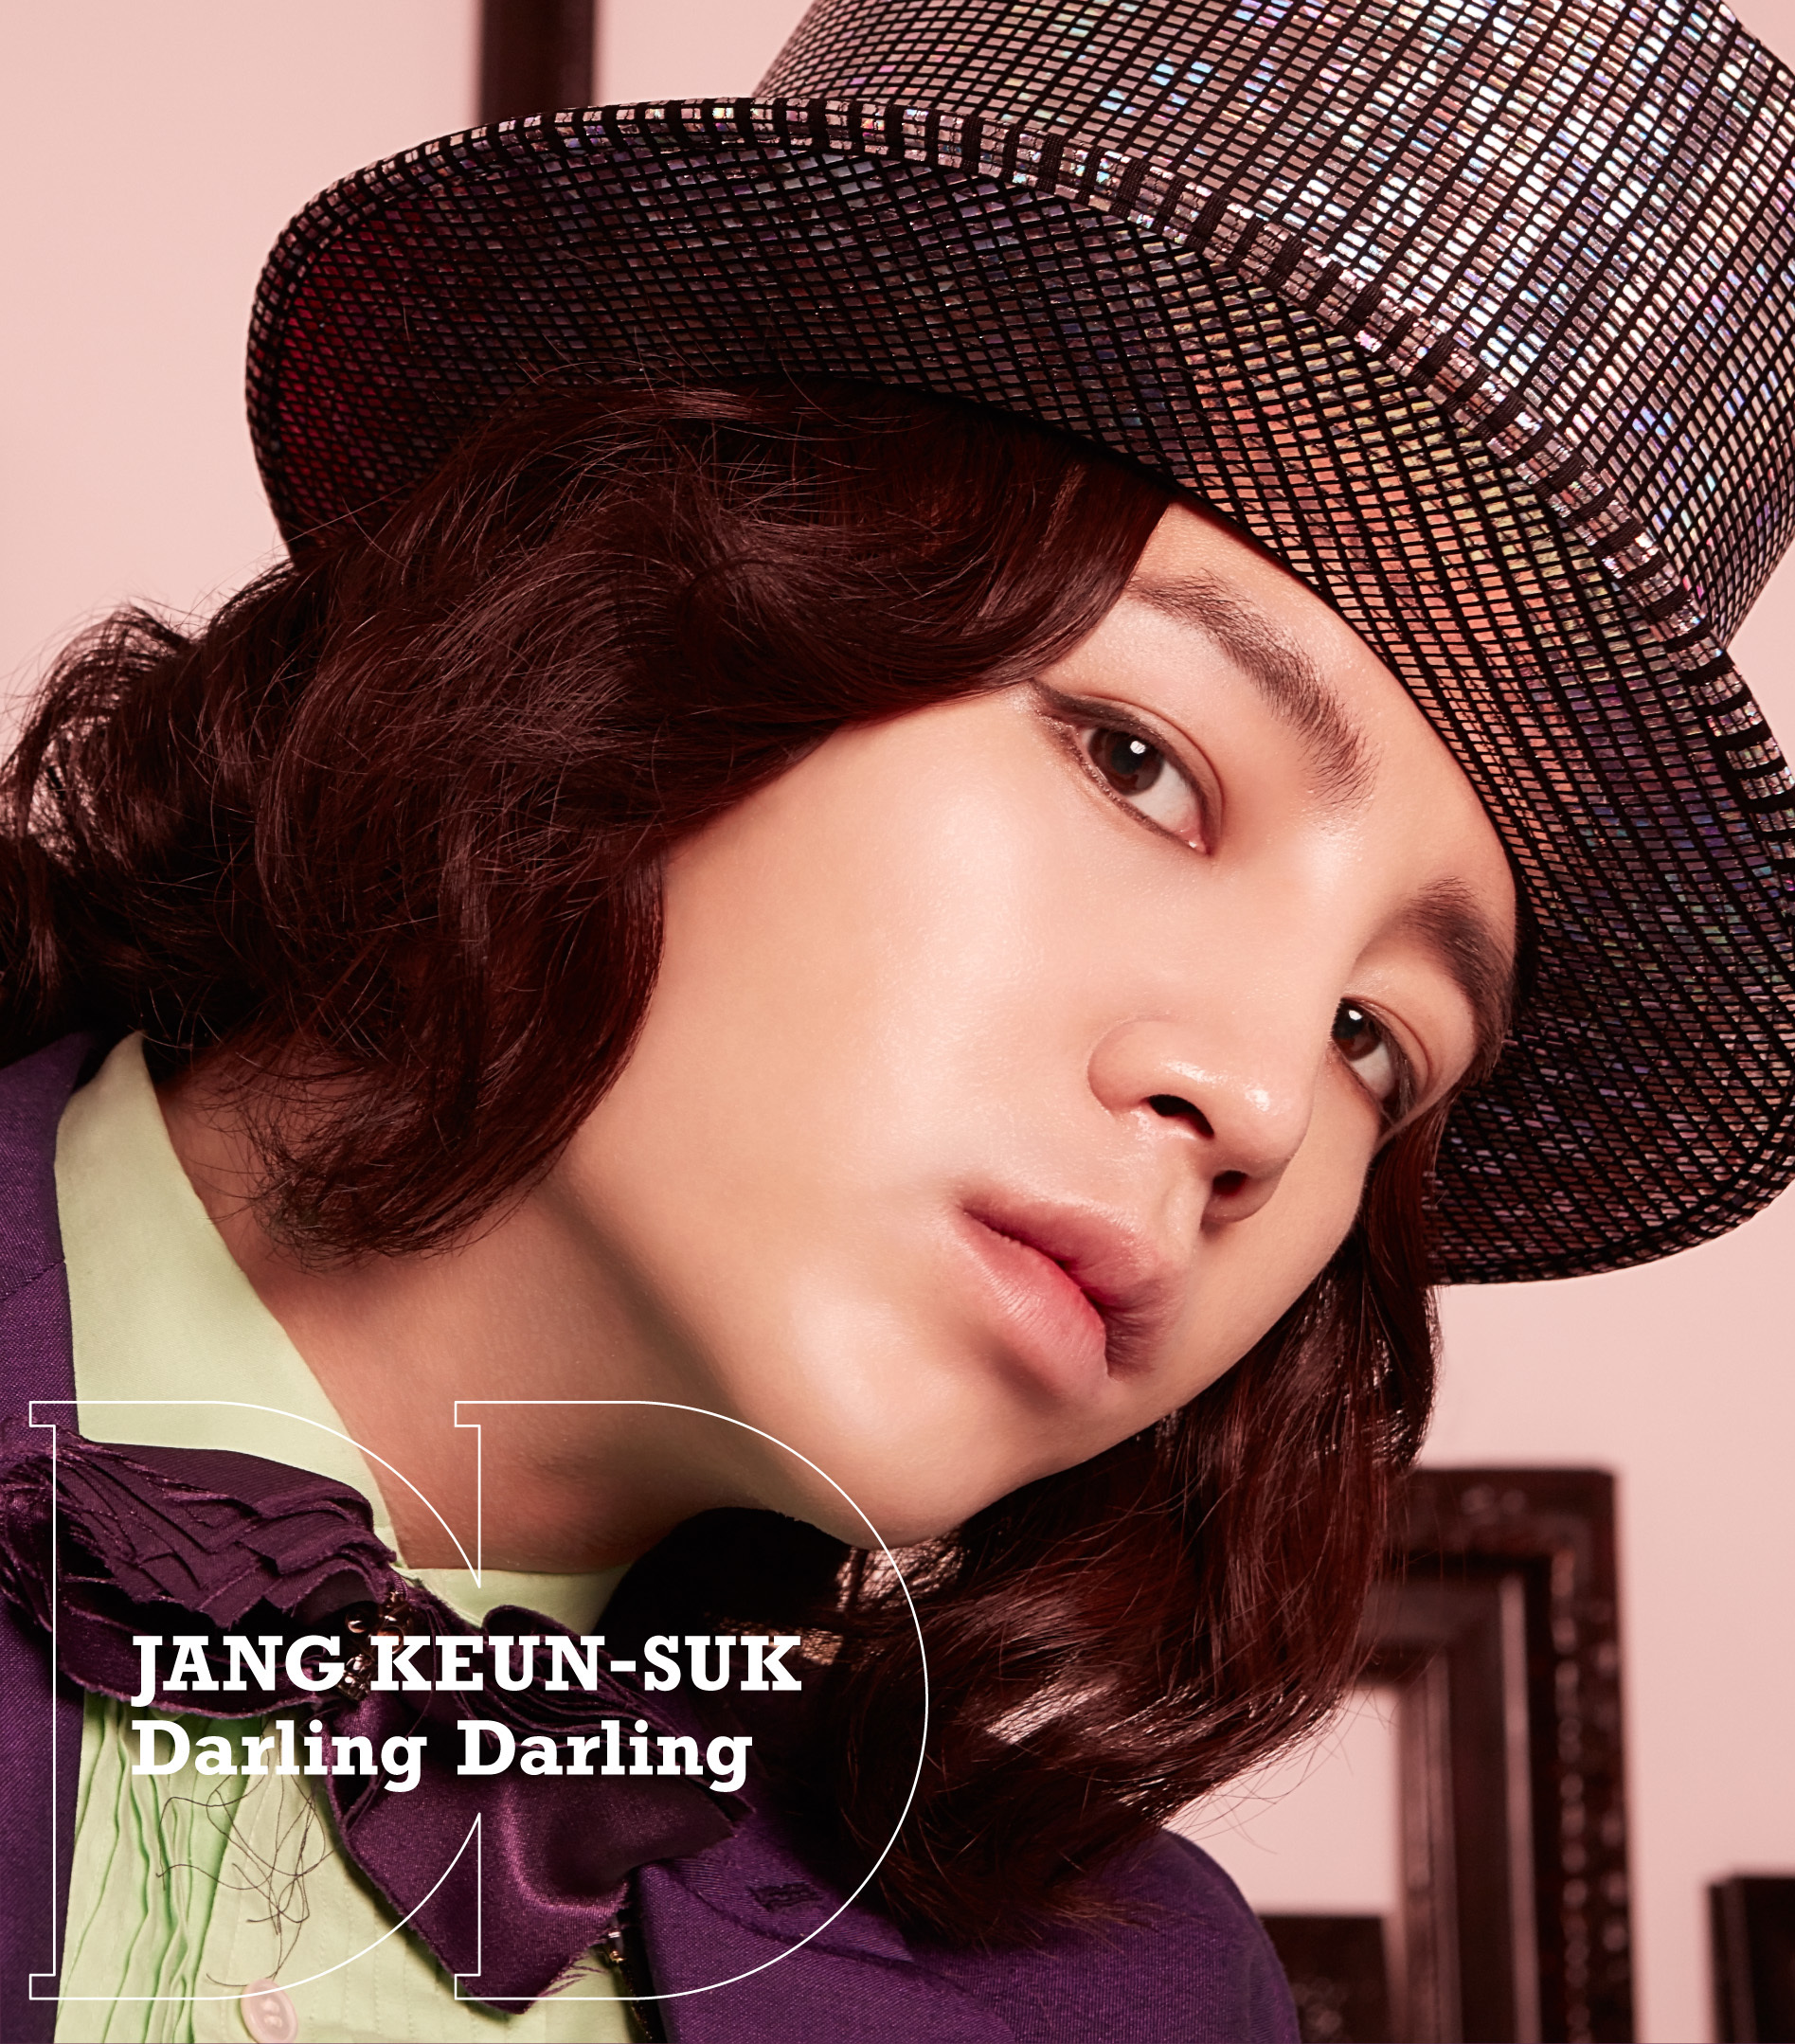 チャン・グンソク「Darling Darling/渇いたKiss」初回限定盤D